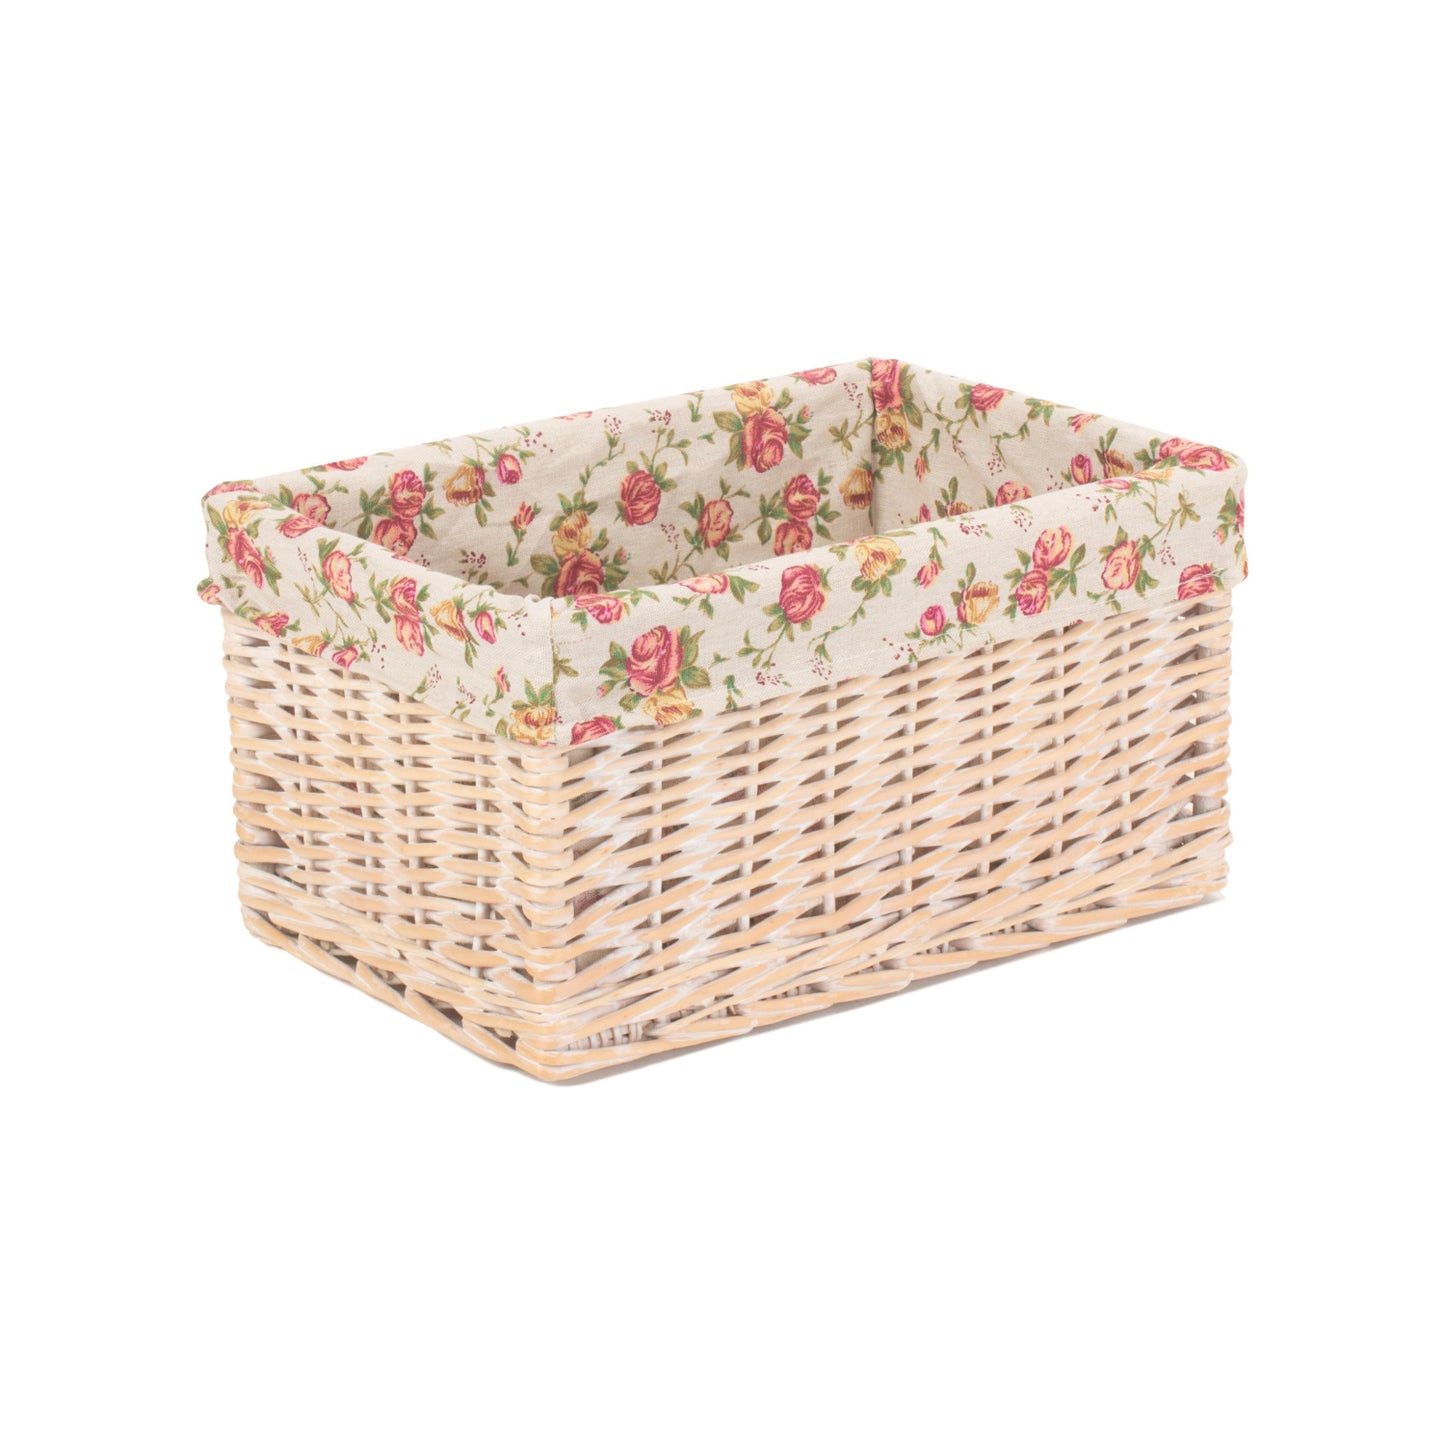 Medium White Wash Storage Basket With Garden Rose Lining